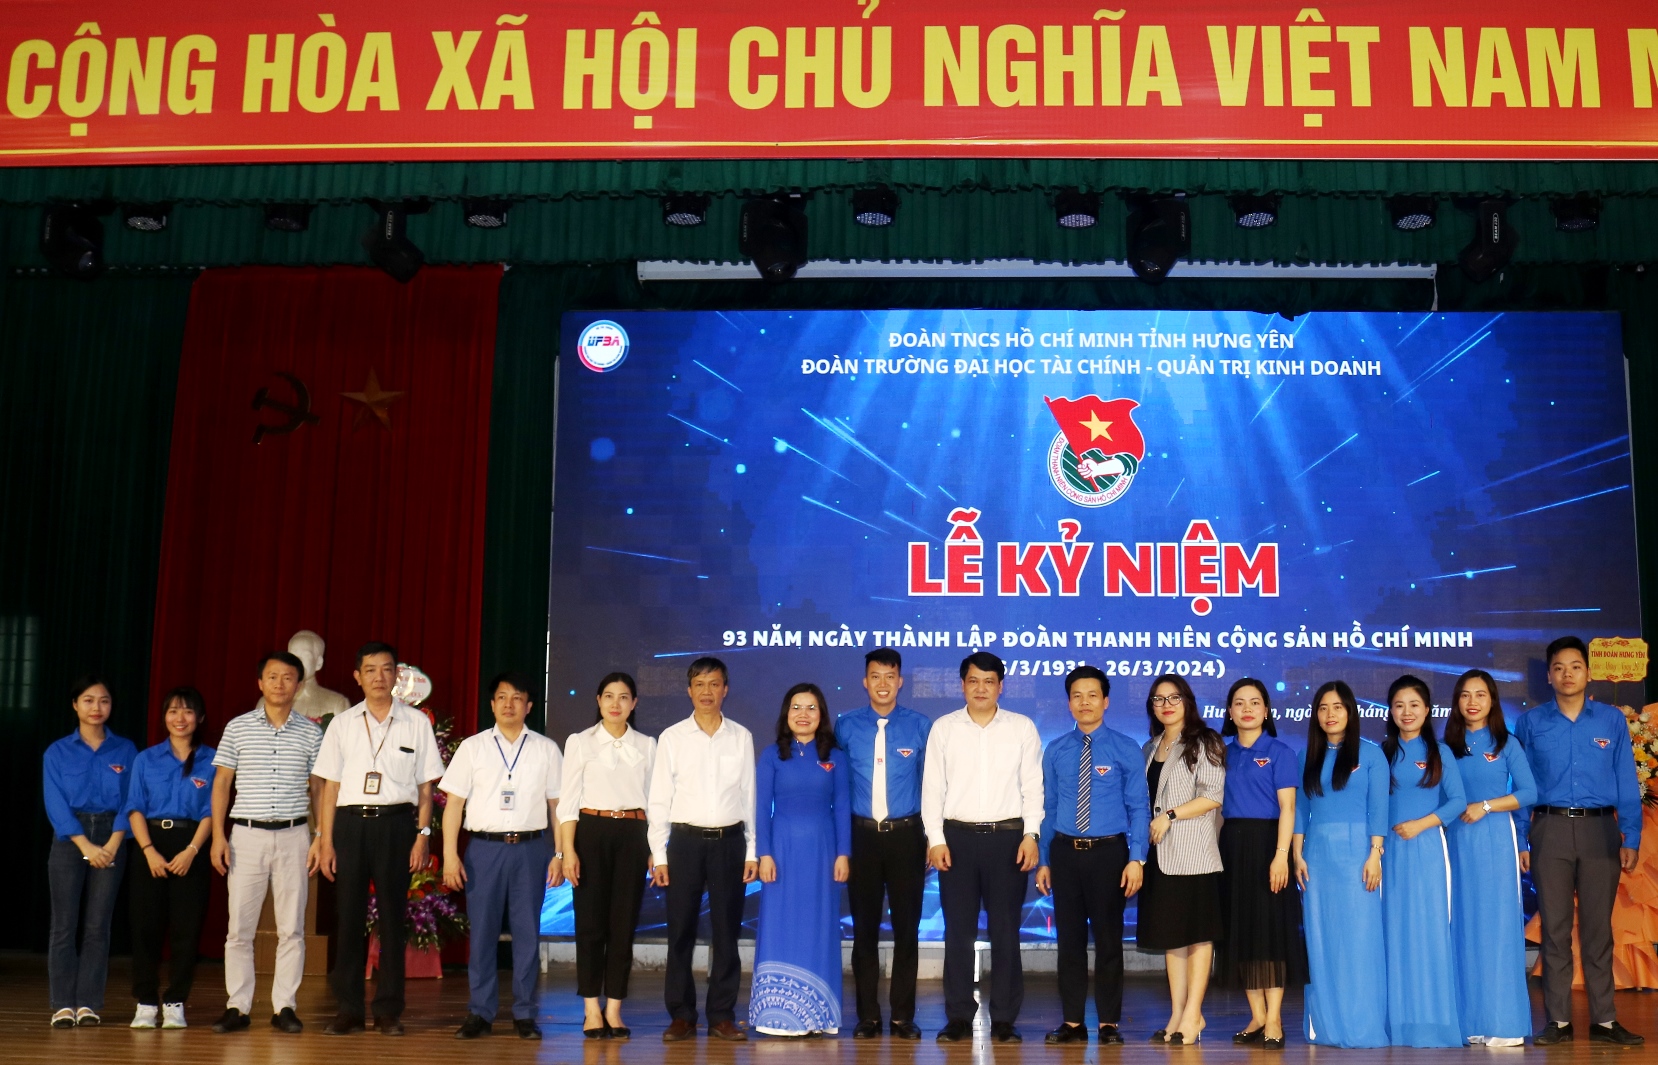  Lễ kỷ niệm 93 năm ngày thành lập Đoàn TNCS Hồ Chí Minh (26/3/1931-26/3/2024)